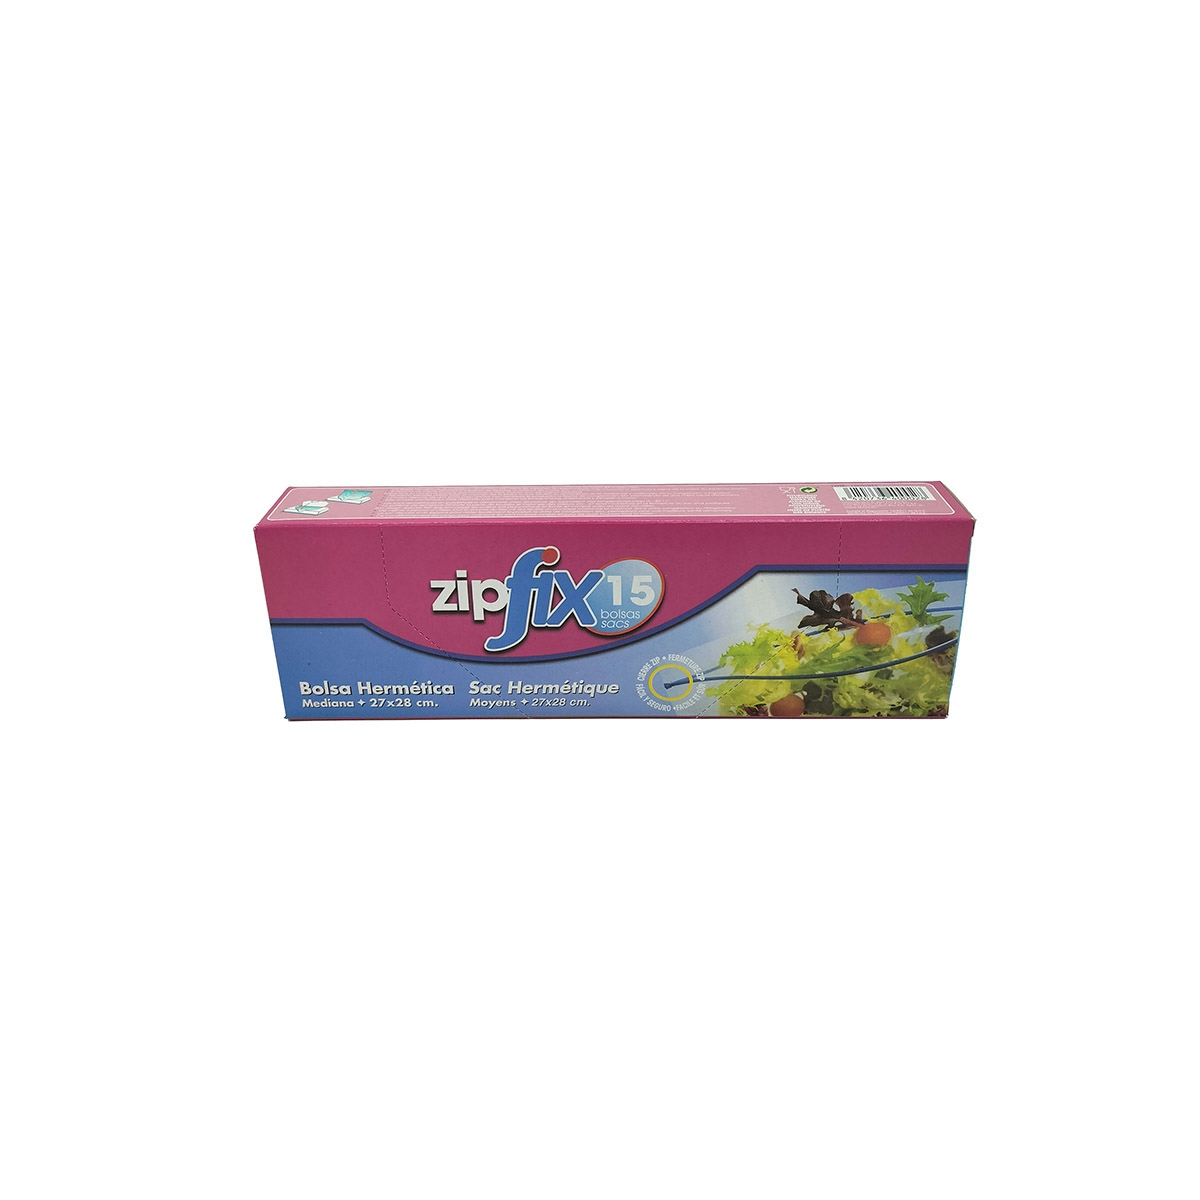 Zip Mediana  27X28  R.15 (4Lts)